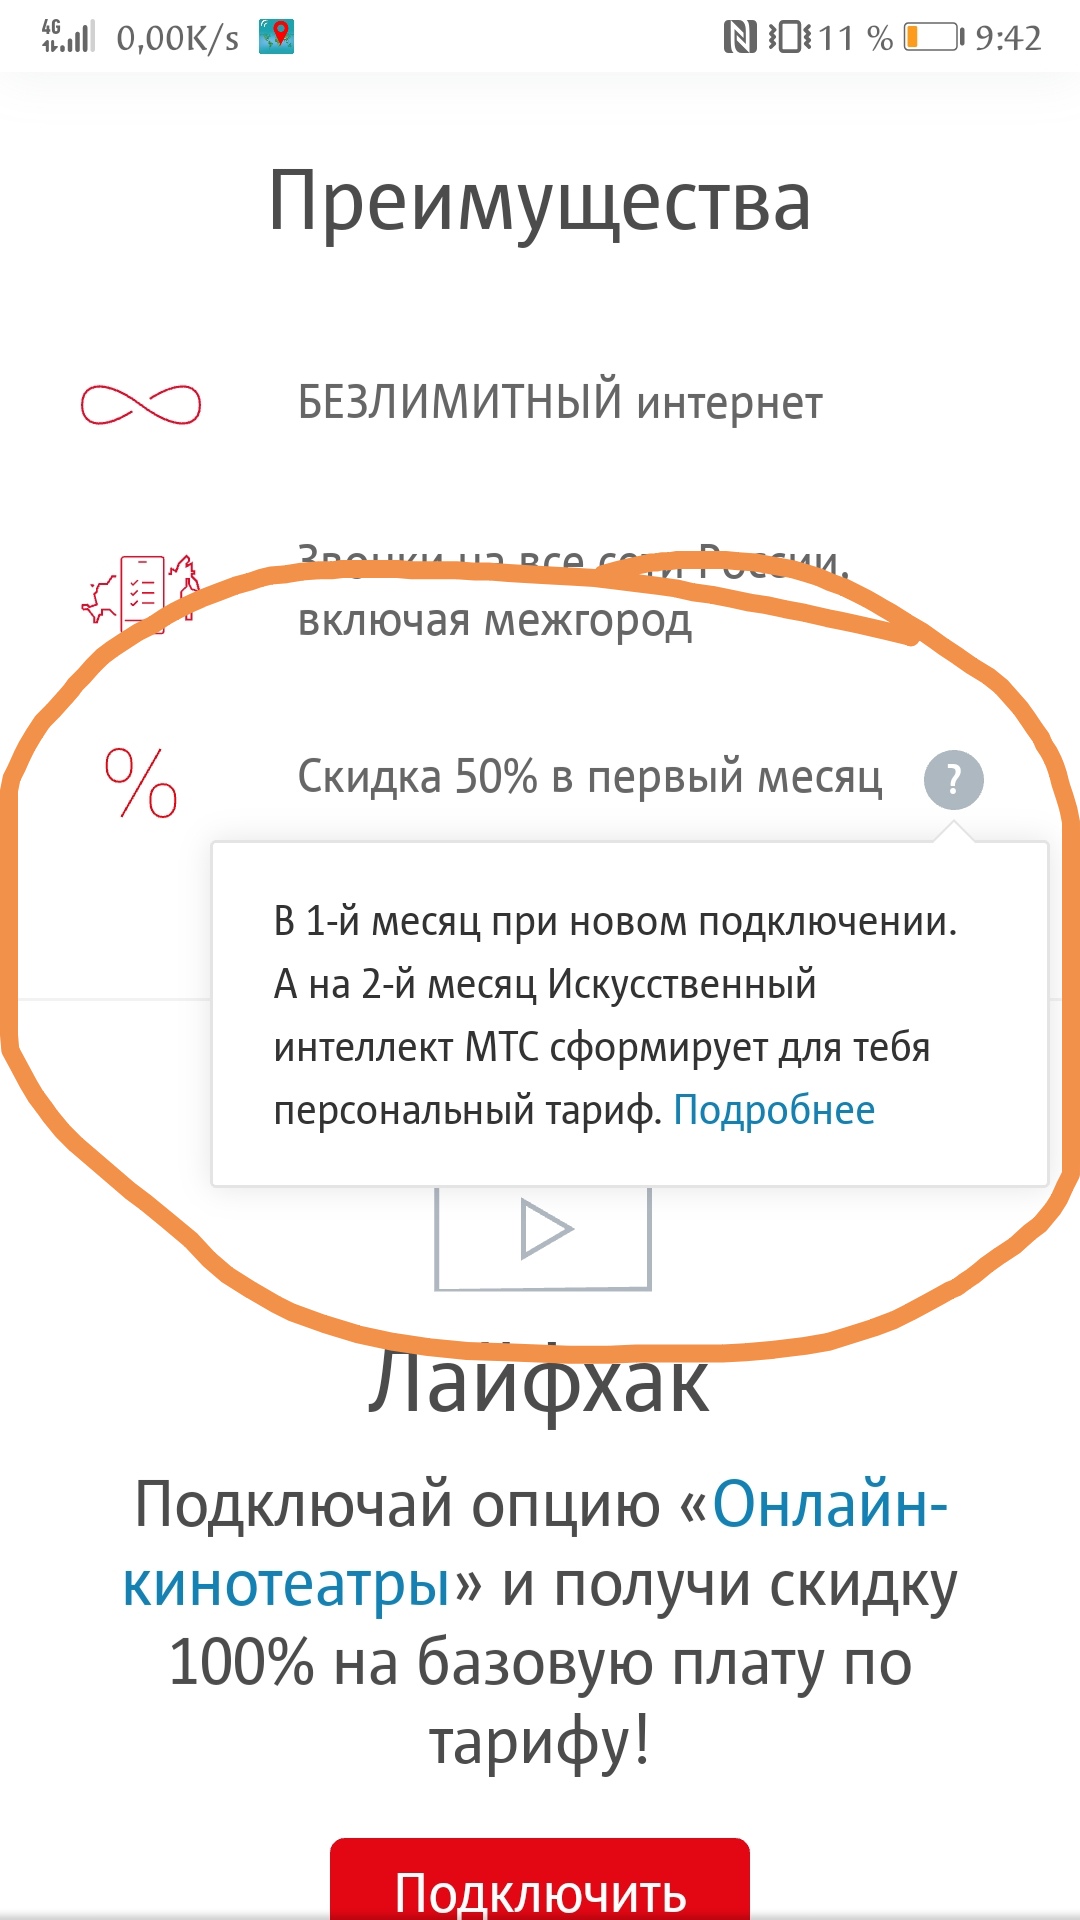 Саяногорск Инфо - screenshot_20200104_094309.jpg, Скачано: 445